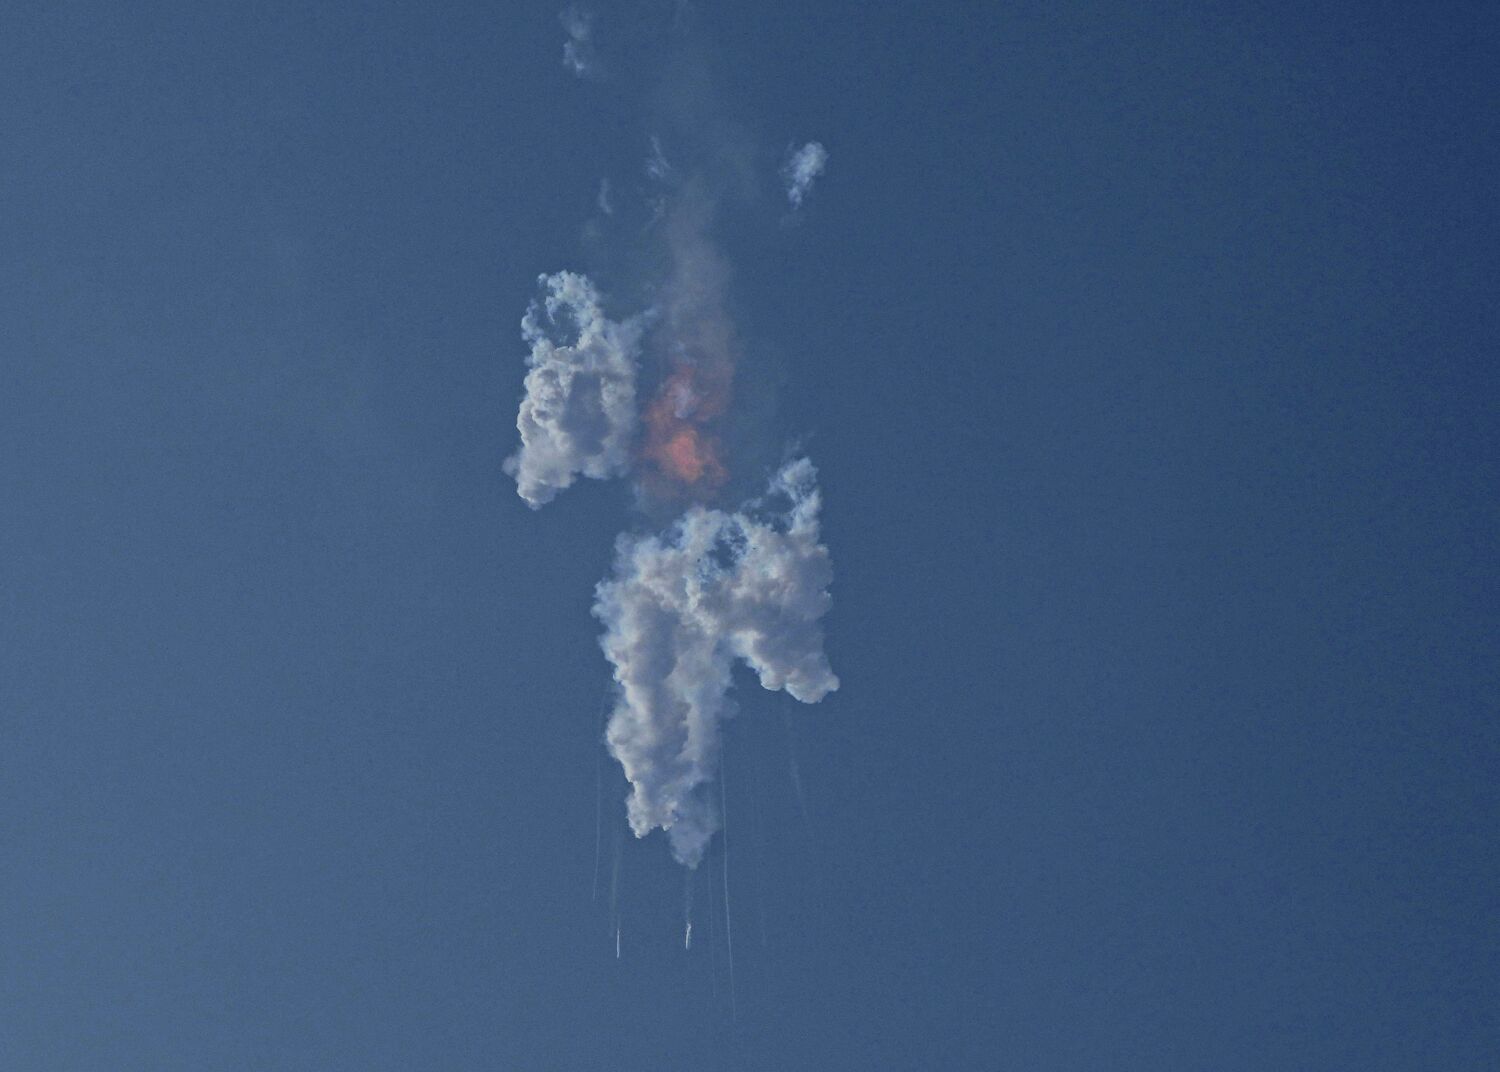 Görüş: Elon Musk'tan nefret mi ediyorsunuz? Sorun değil, ancak SpaceX'in Starship roketi için kök